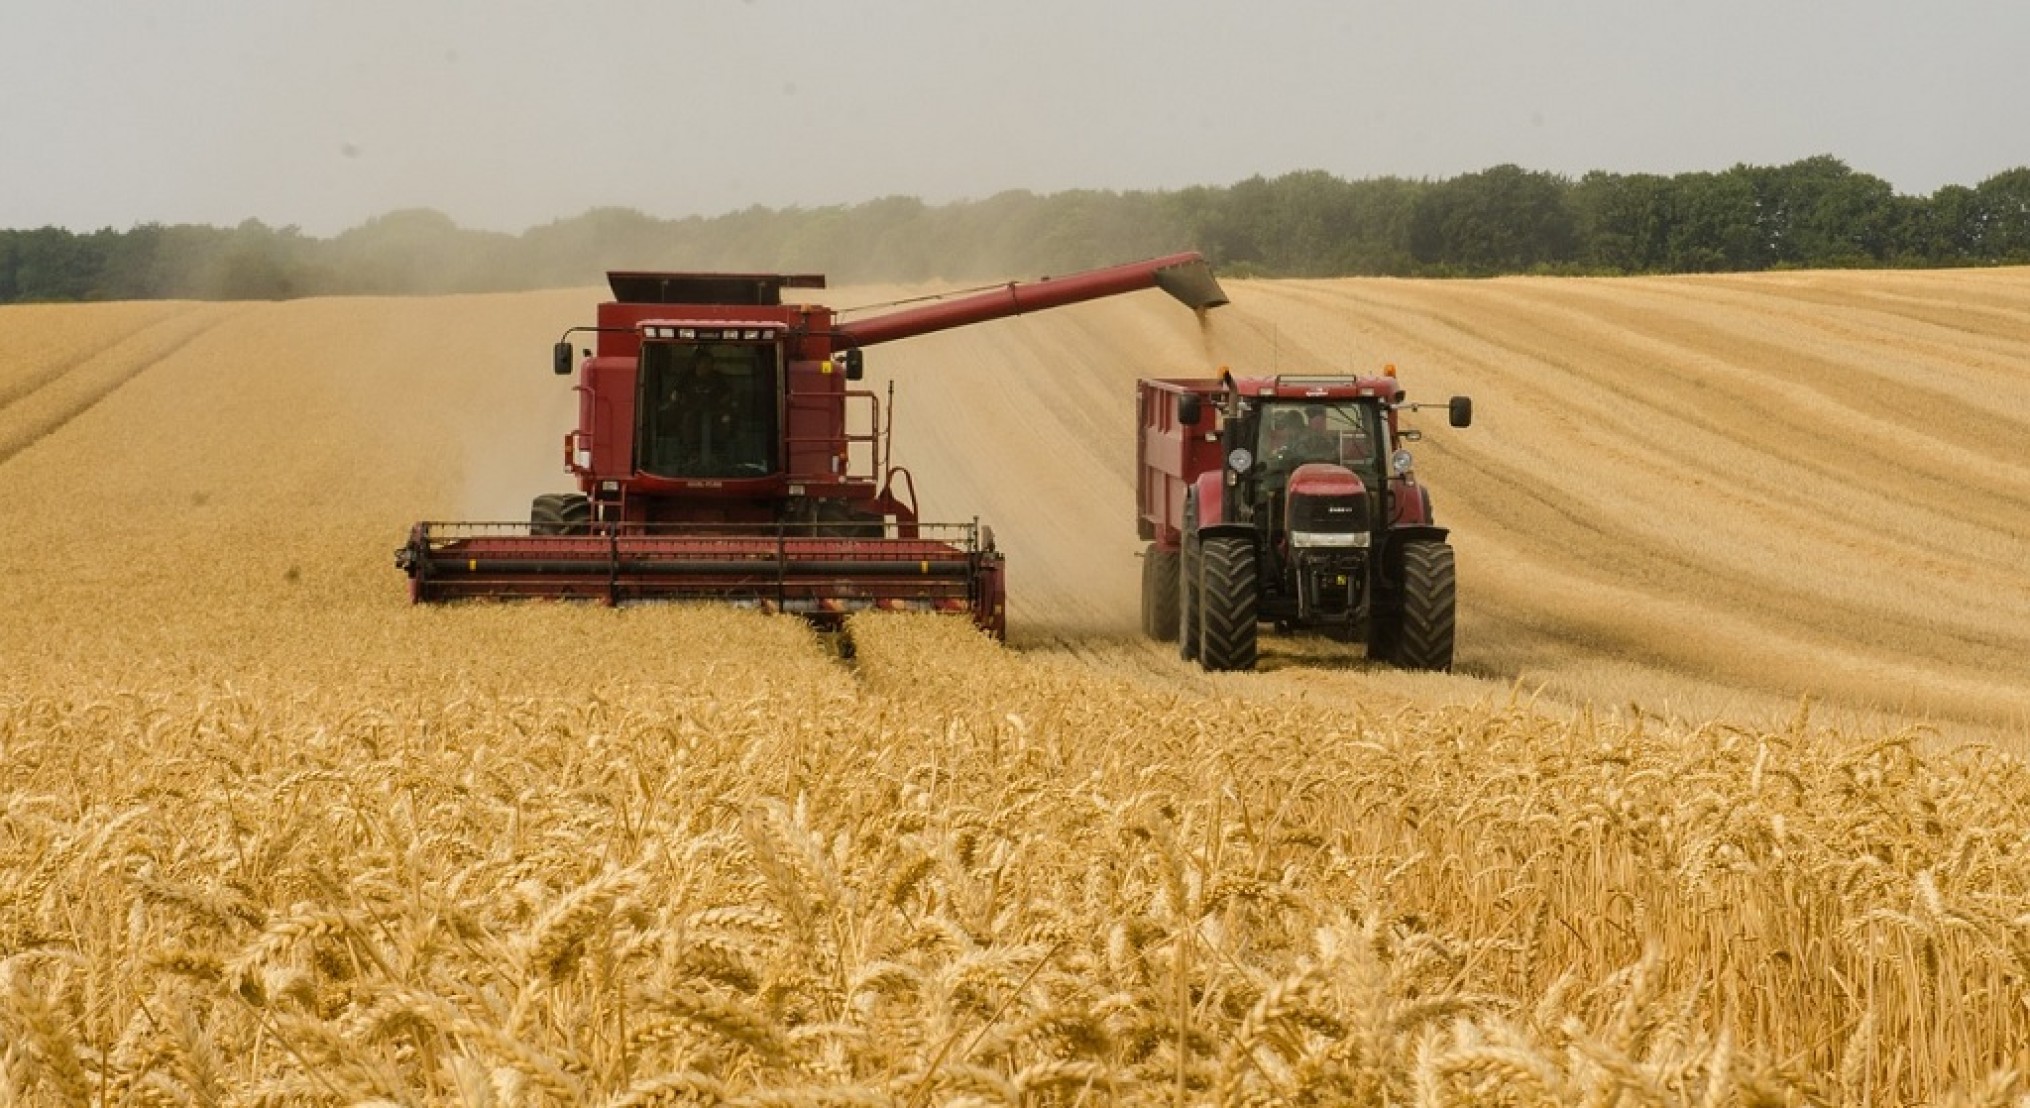 Sustainable wheat